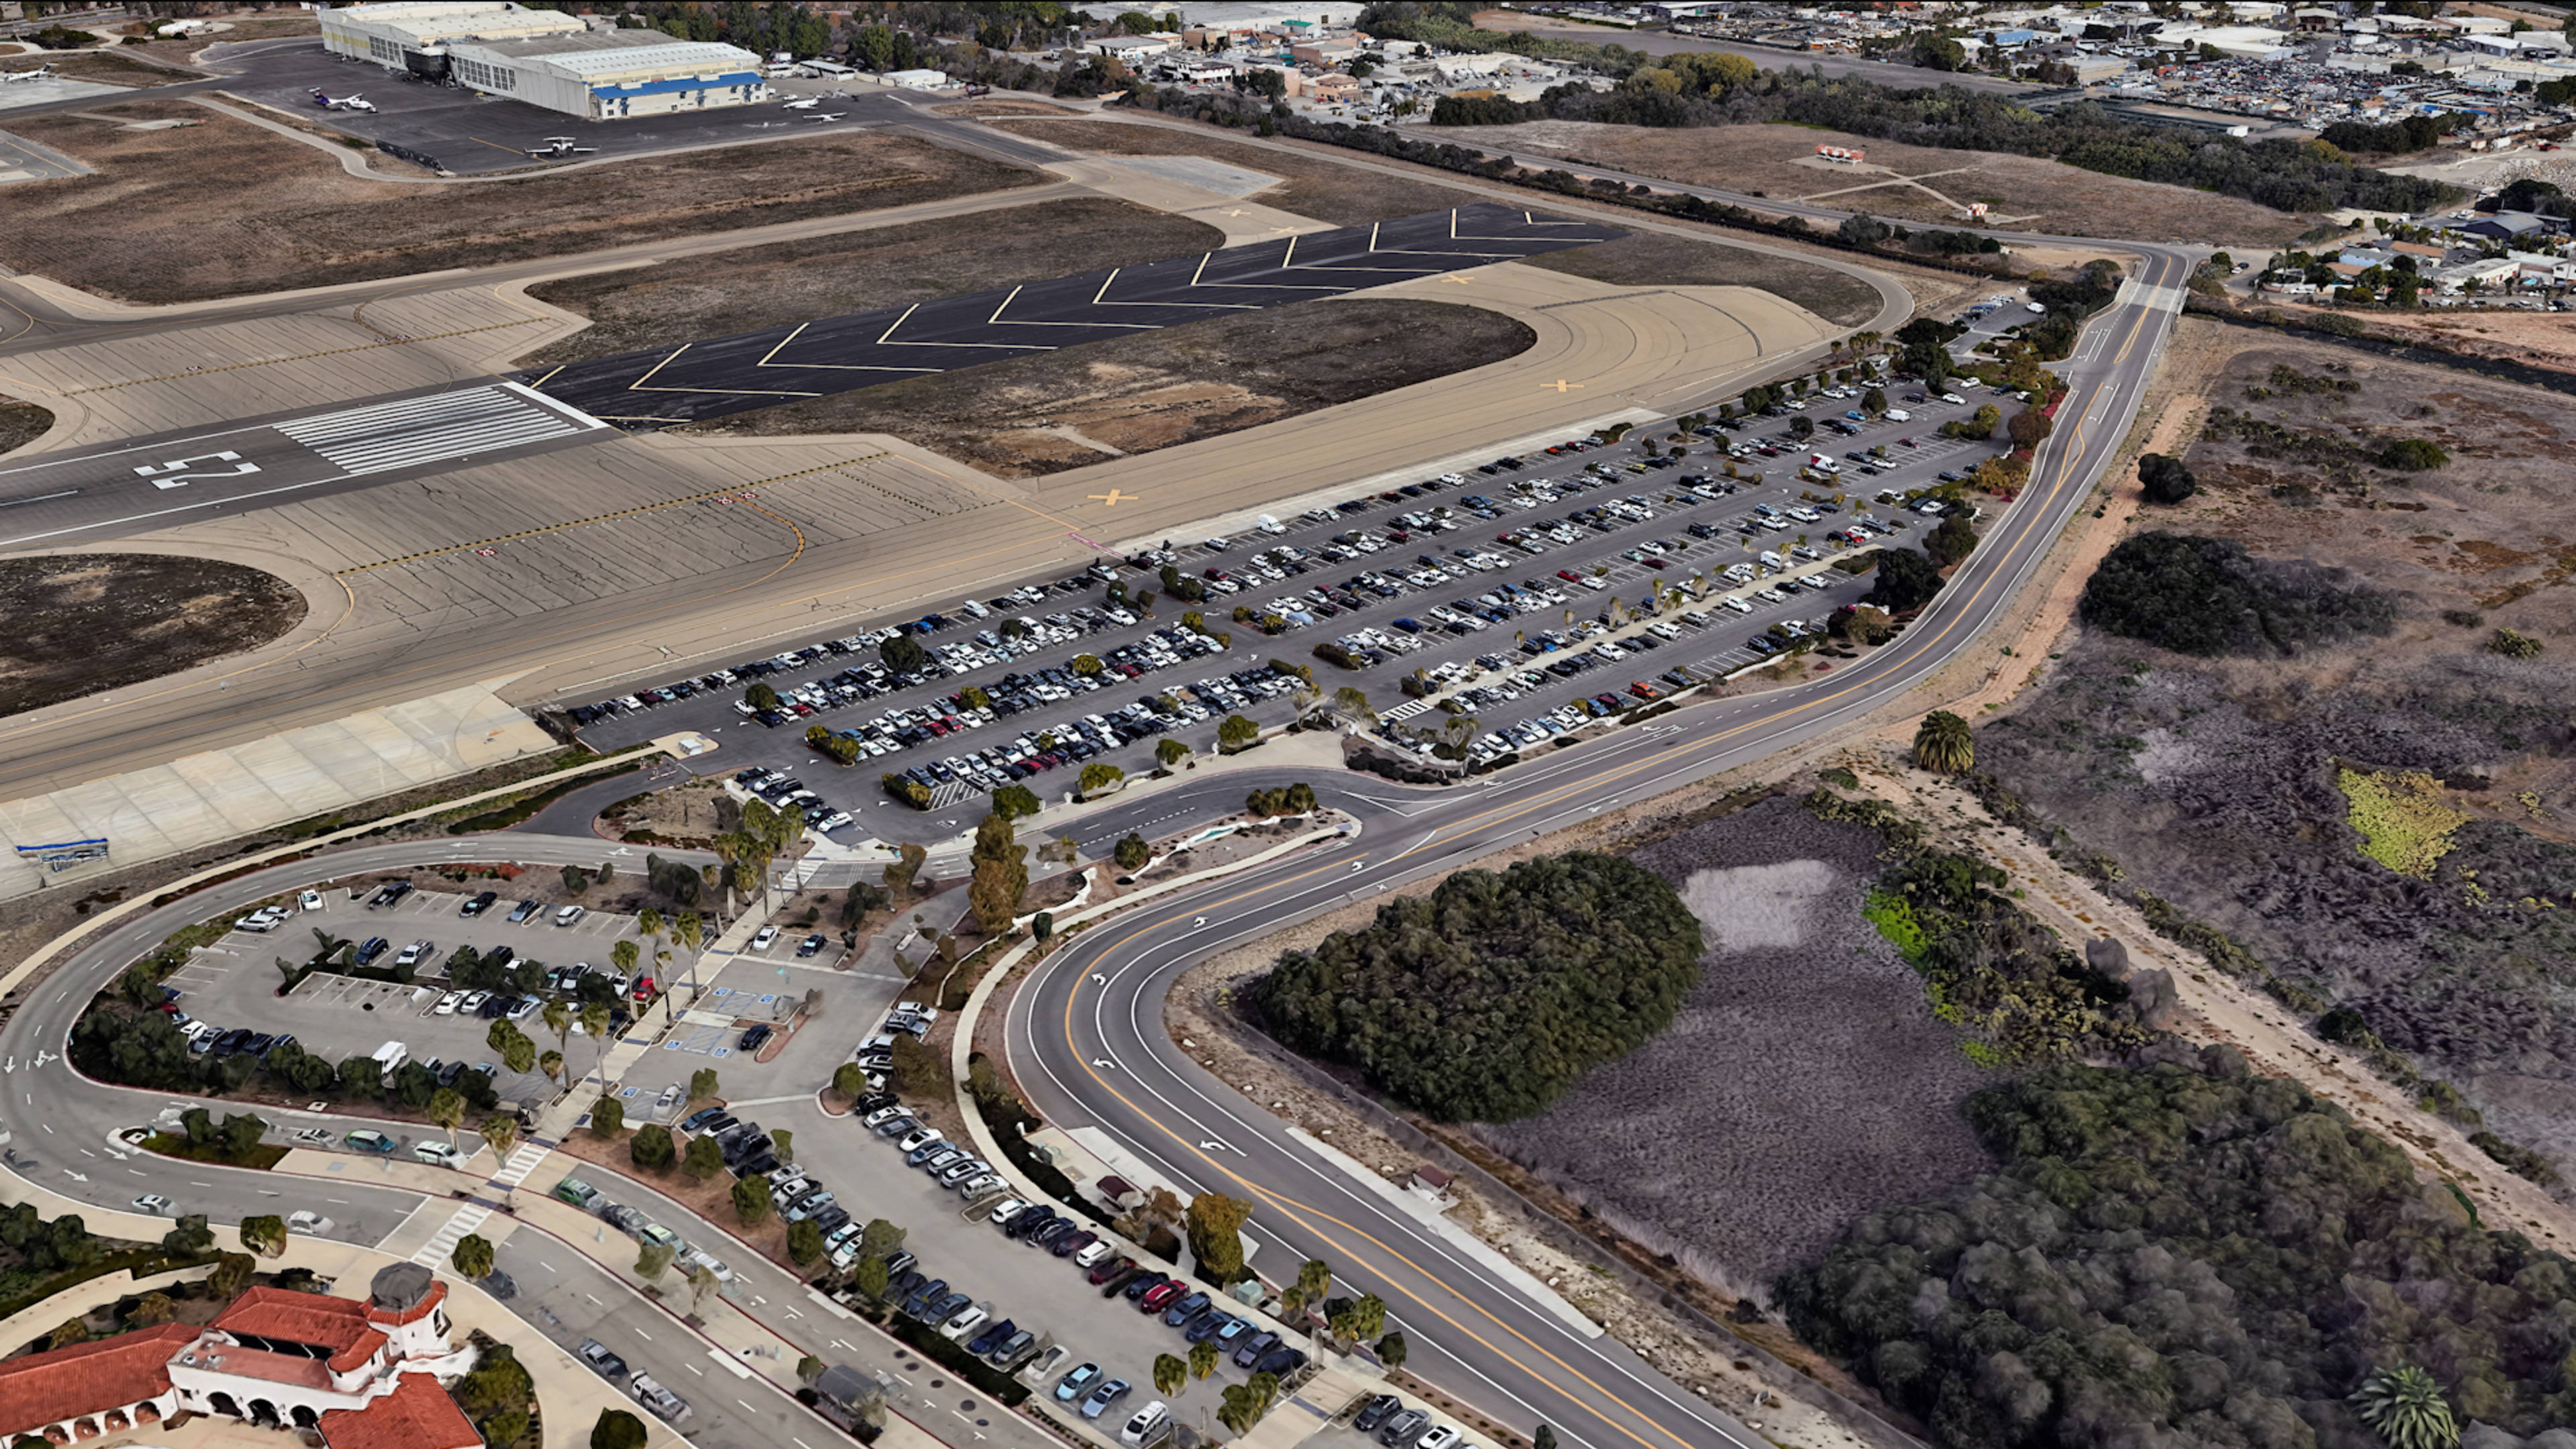 Aerial View of Santa Barbara Airport Parking